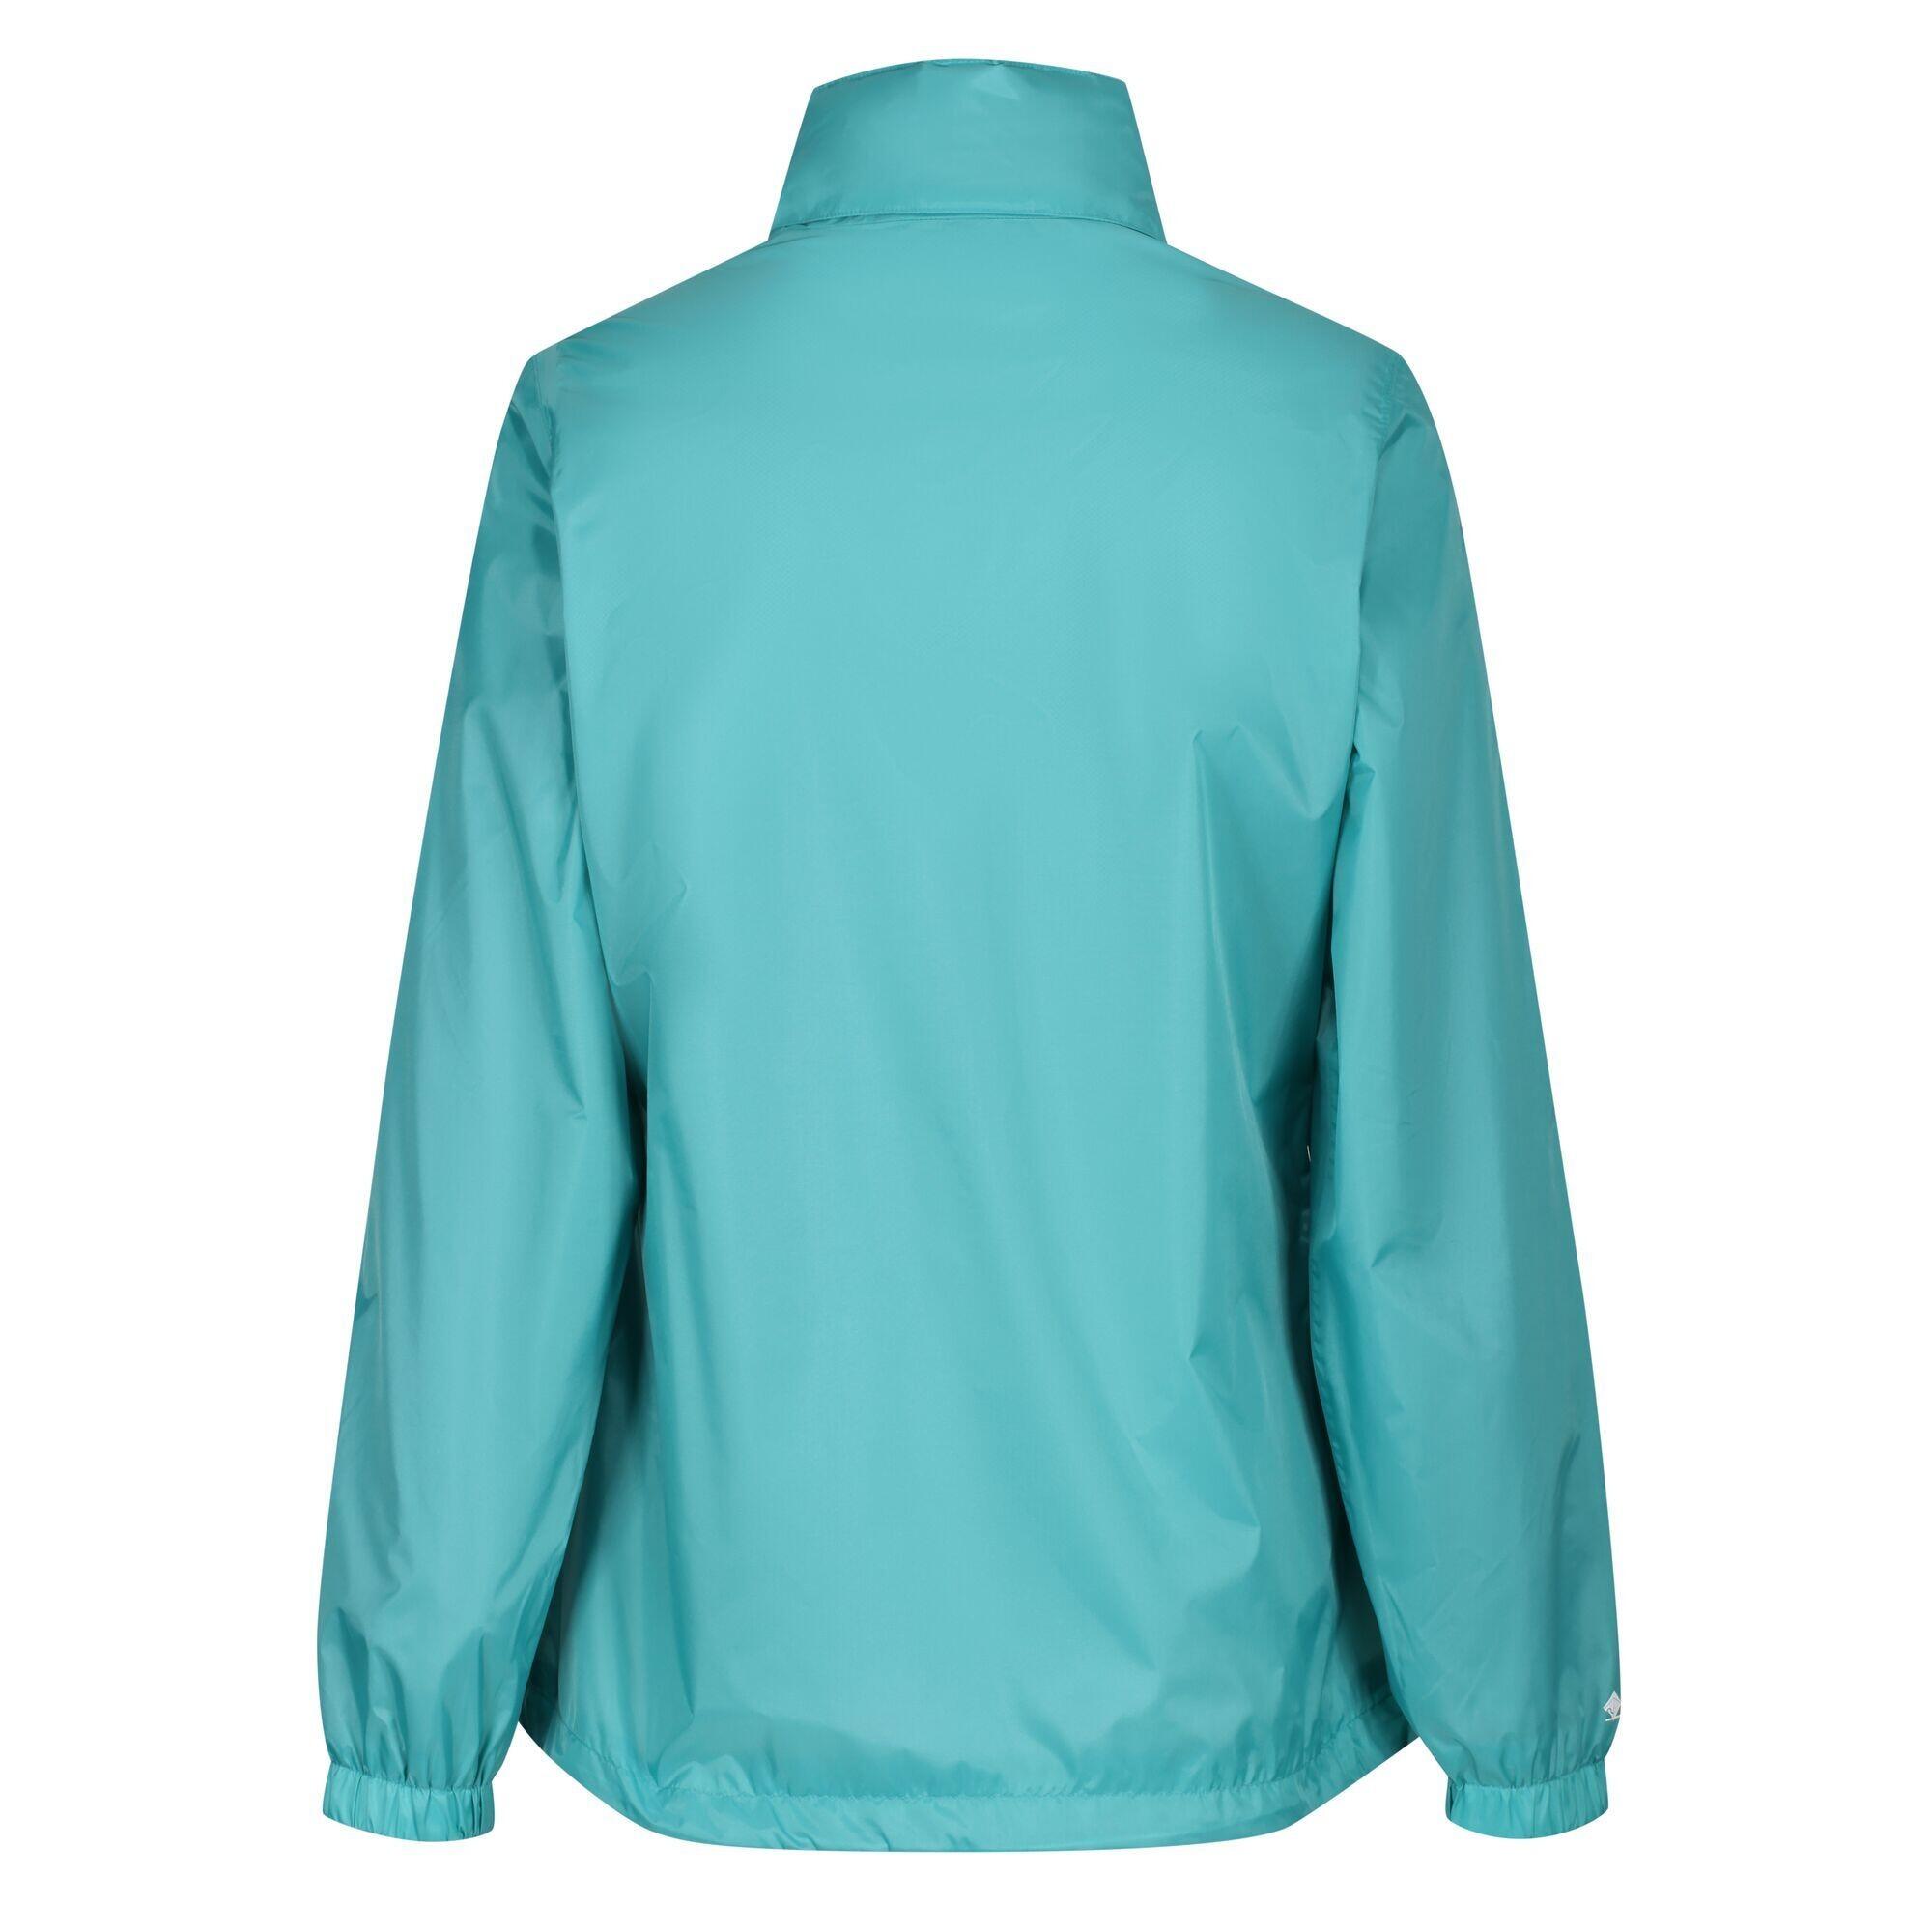 Womens/Ladies Corinne IV Waterproof Jacket (Turquoise) 2/4